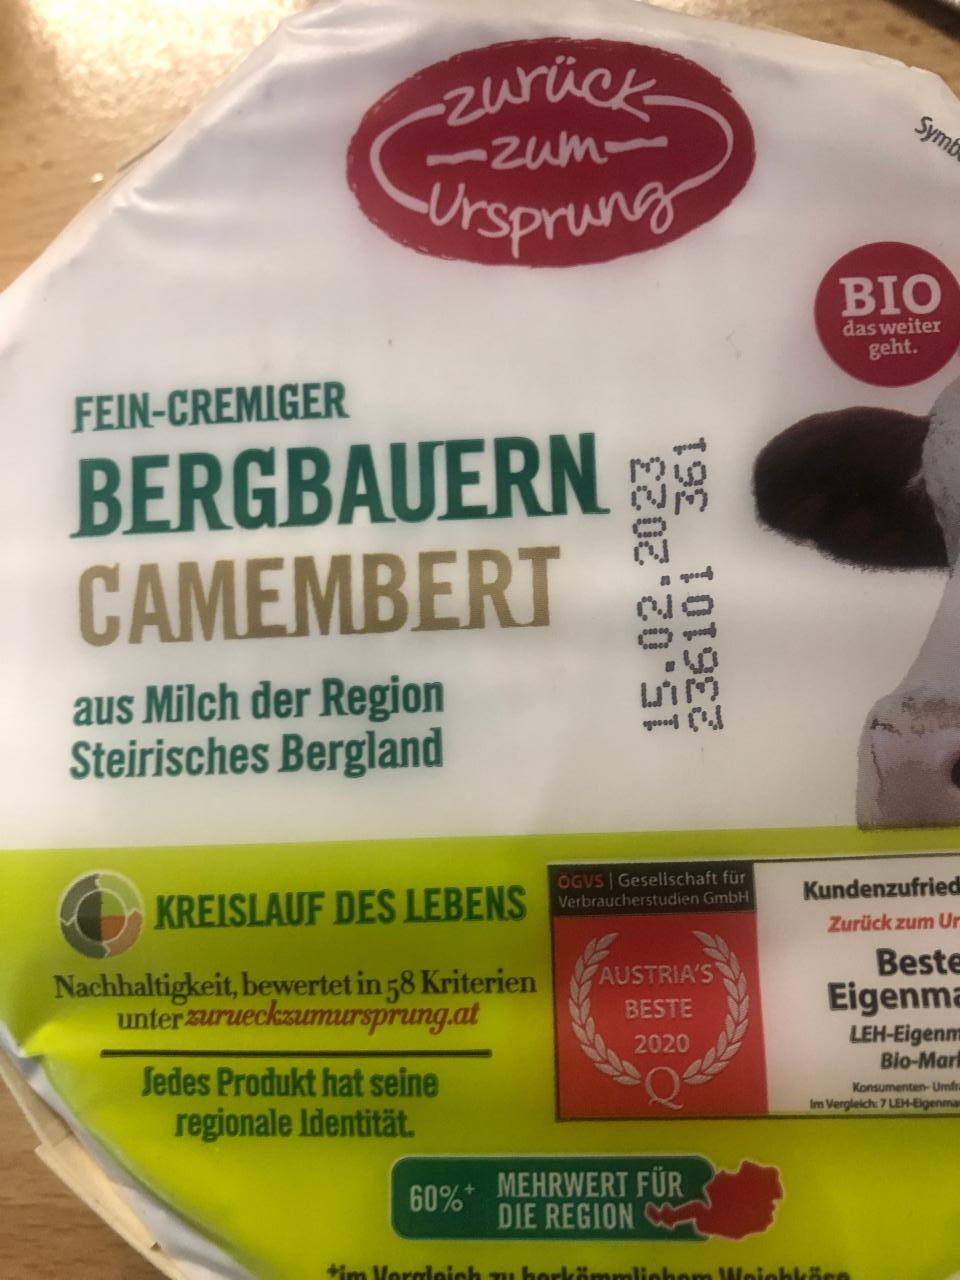 Fotografie - Bergbauern Camembert Zurück zum Ursprung